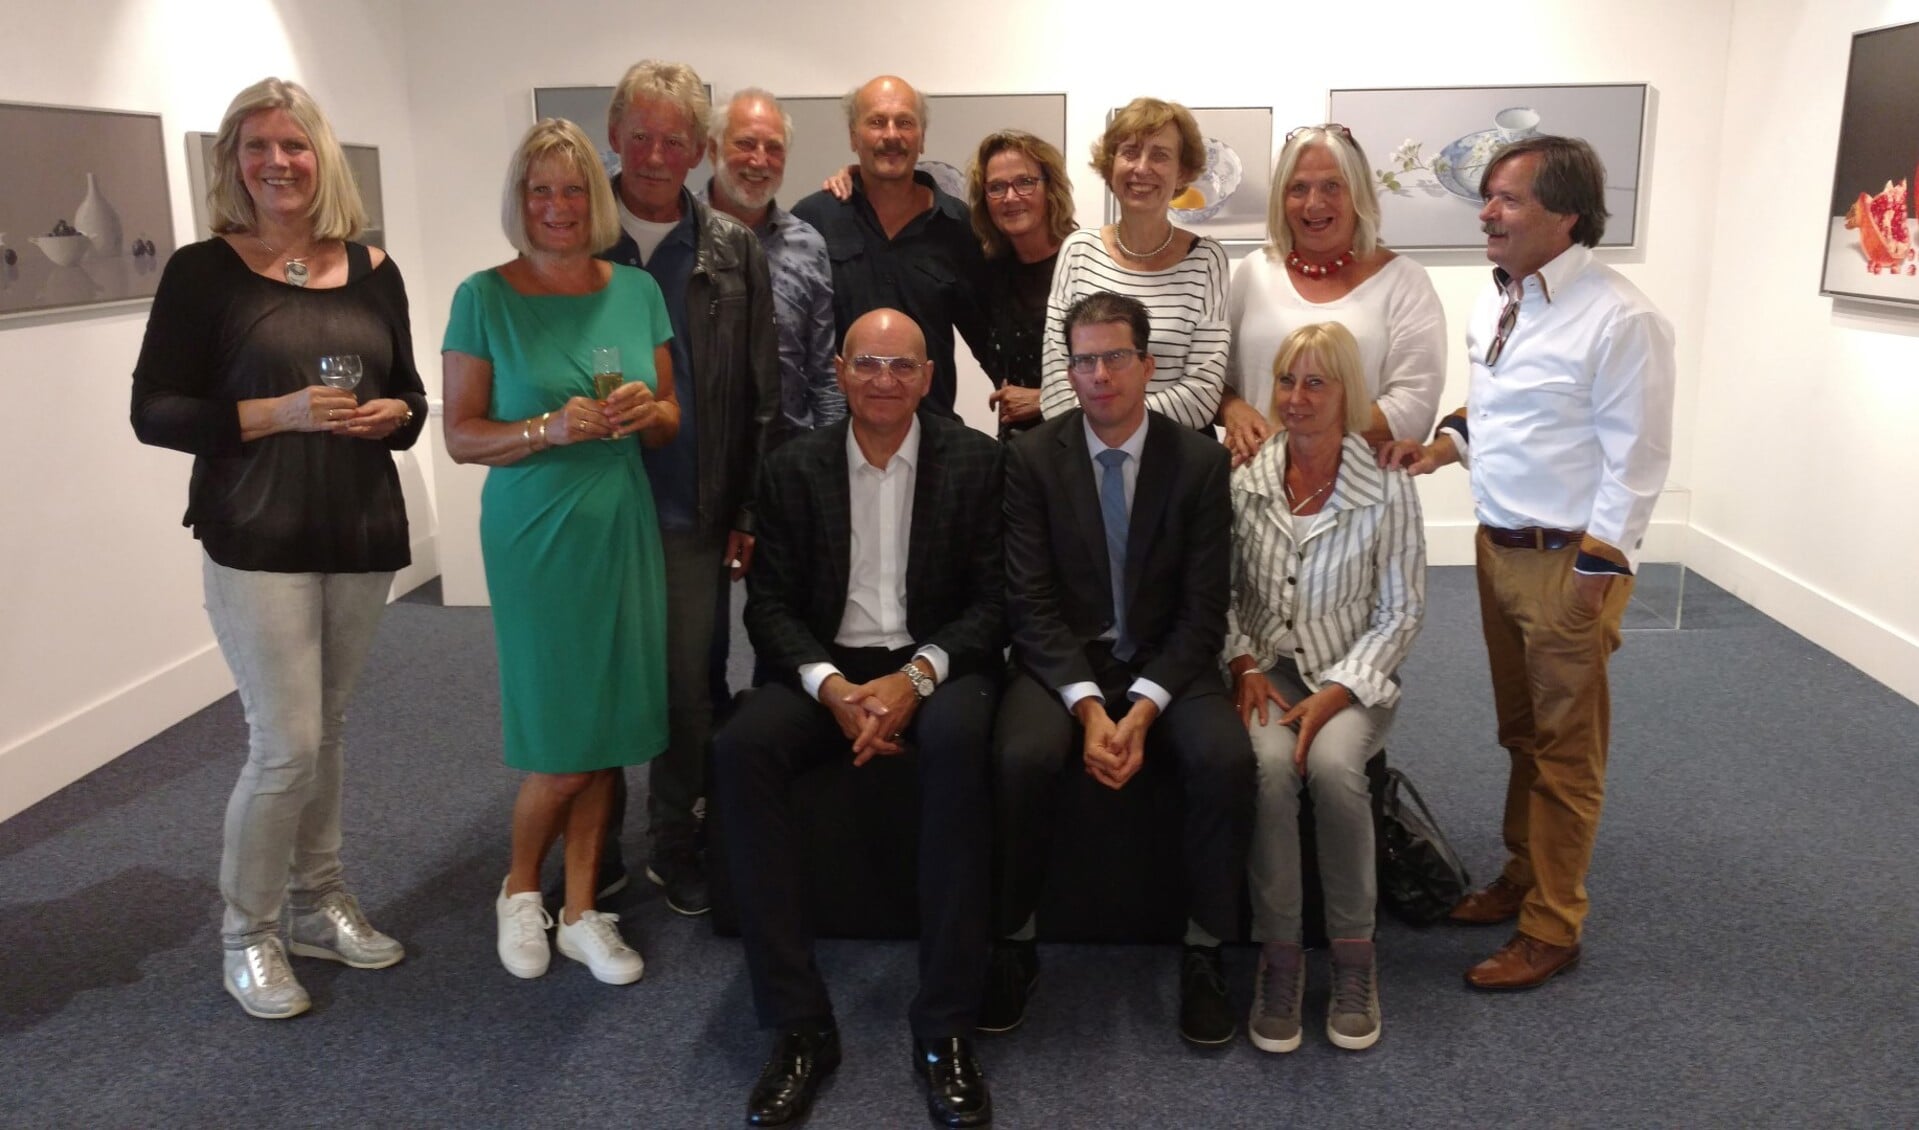  Het collectief Diversity met vooraan in het midden de burgemeesters Joost van Oostrum (l) en Ralph Brodel van Sudern. Foto: Ton Kolkman